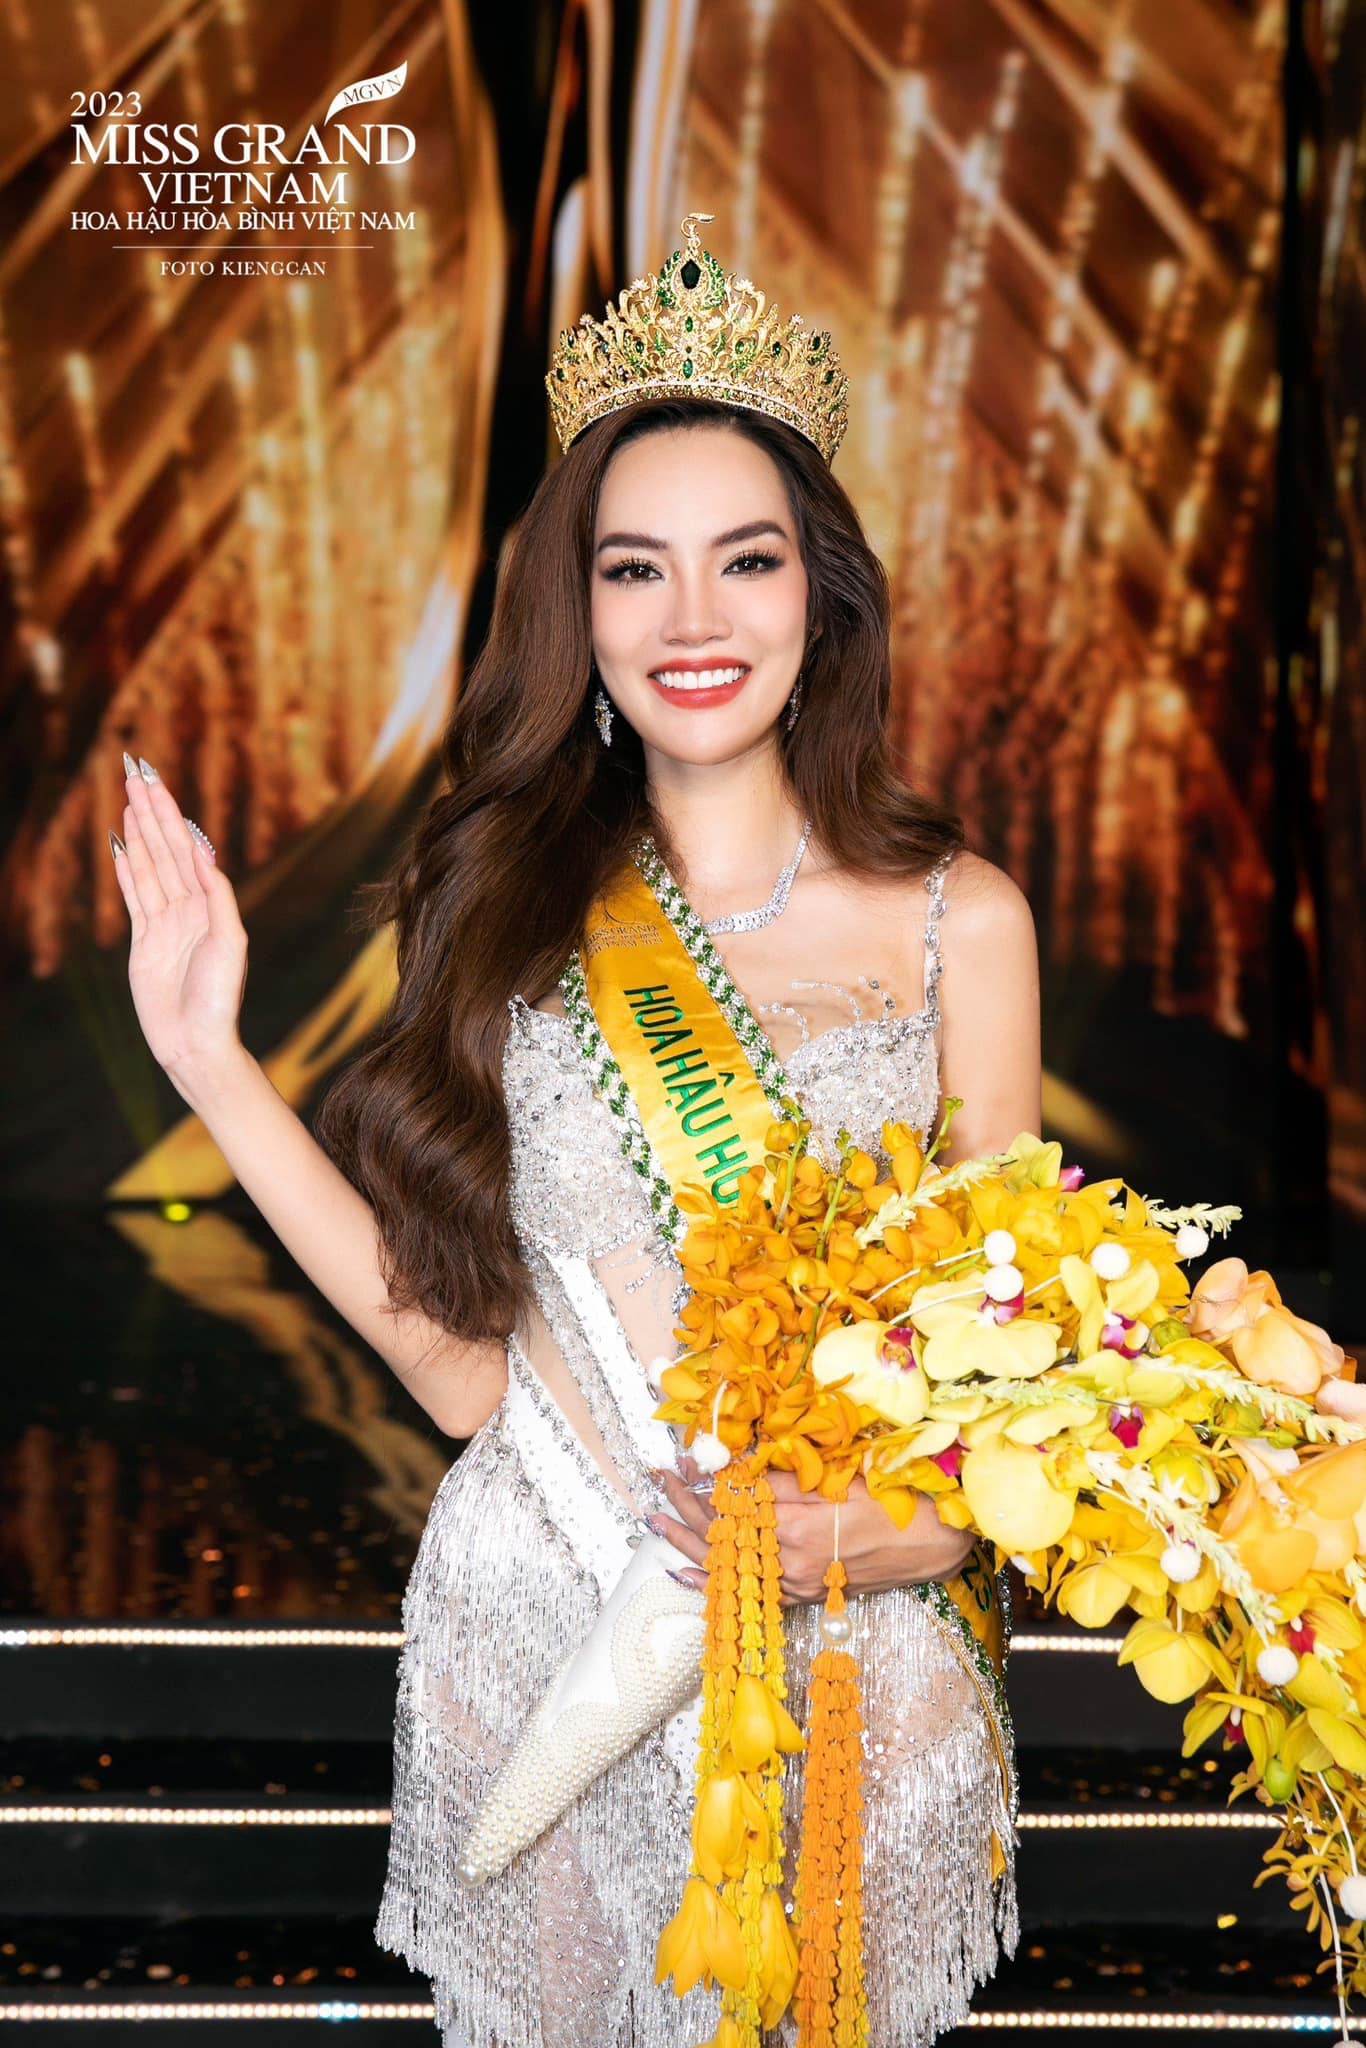 Lê Hoàng Phương đi làm từ thiện ngay sau đêm đăng quang Miss Grand Vietnam 2023, không vội 'chạy show' phỏng vấn - ảnh 1